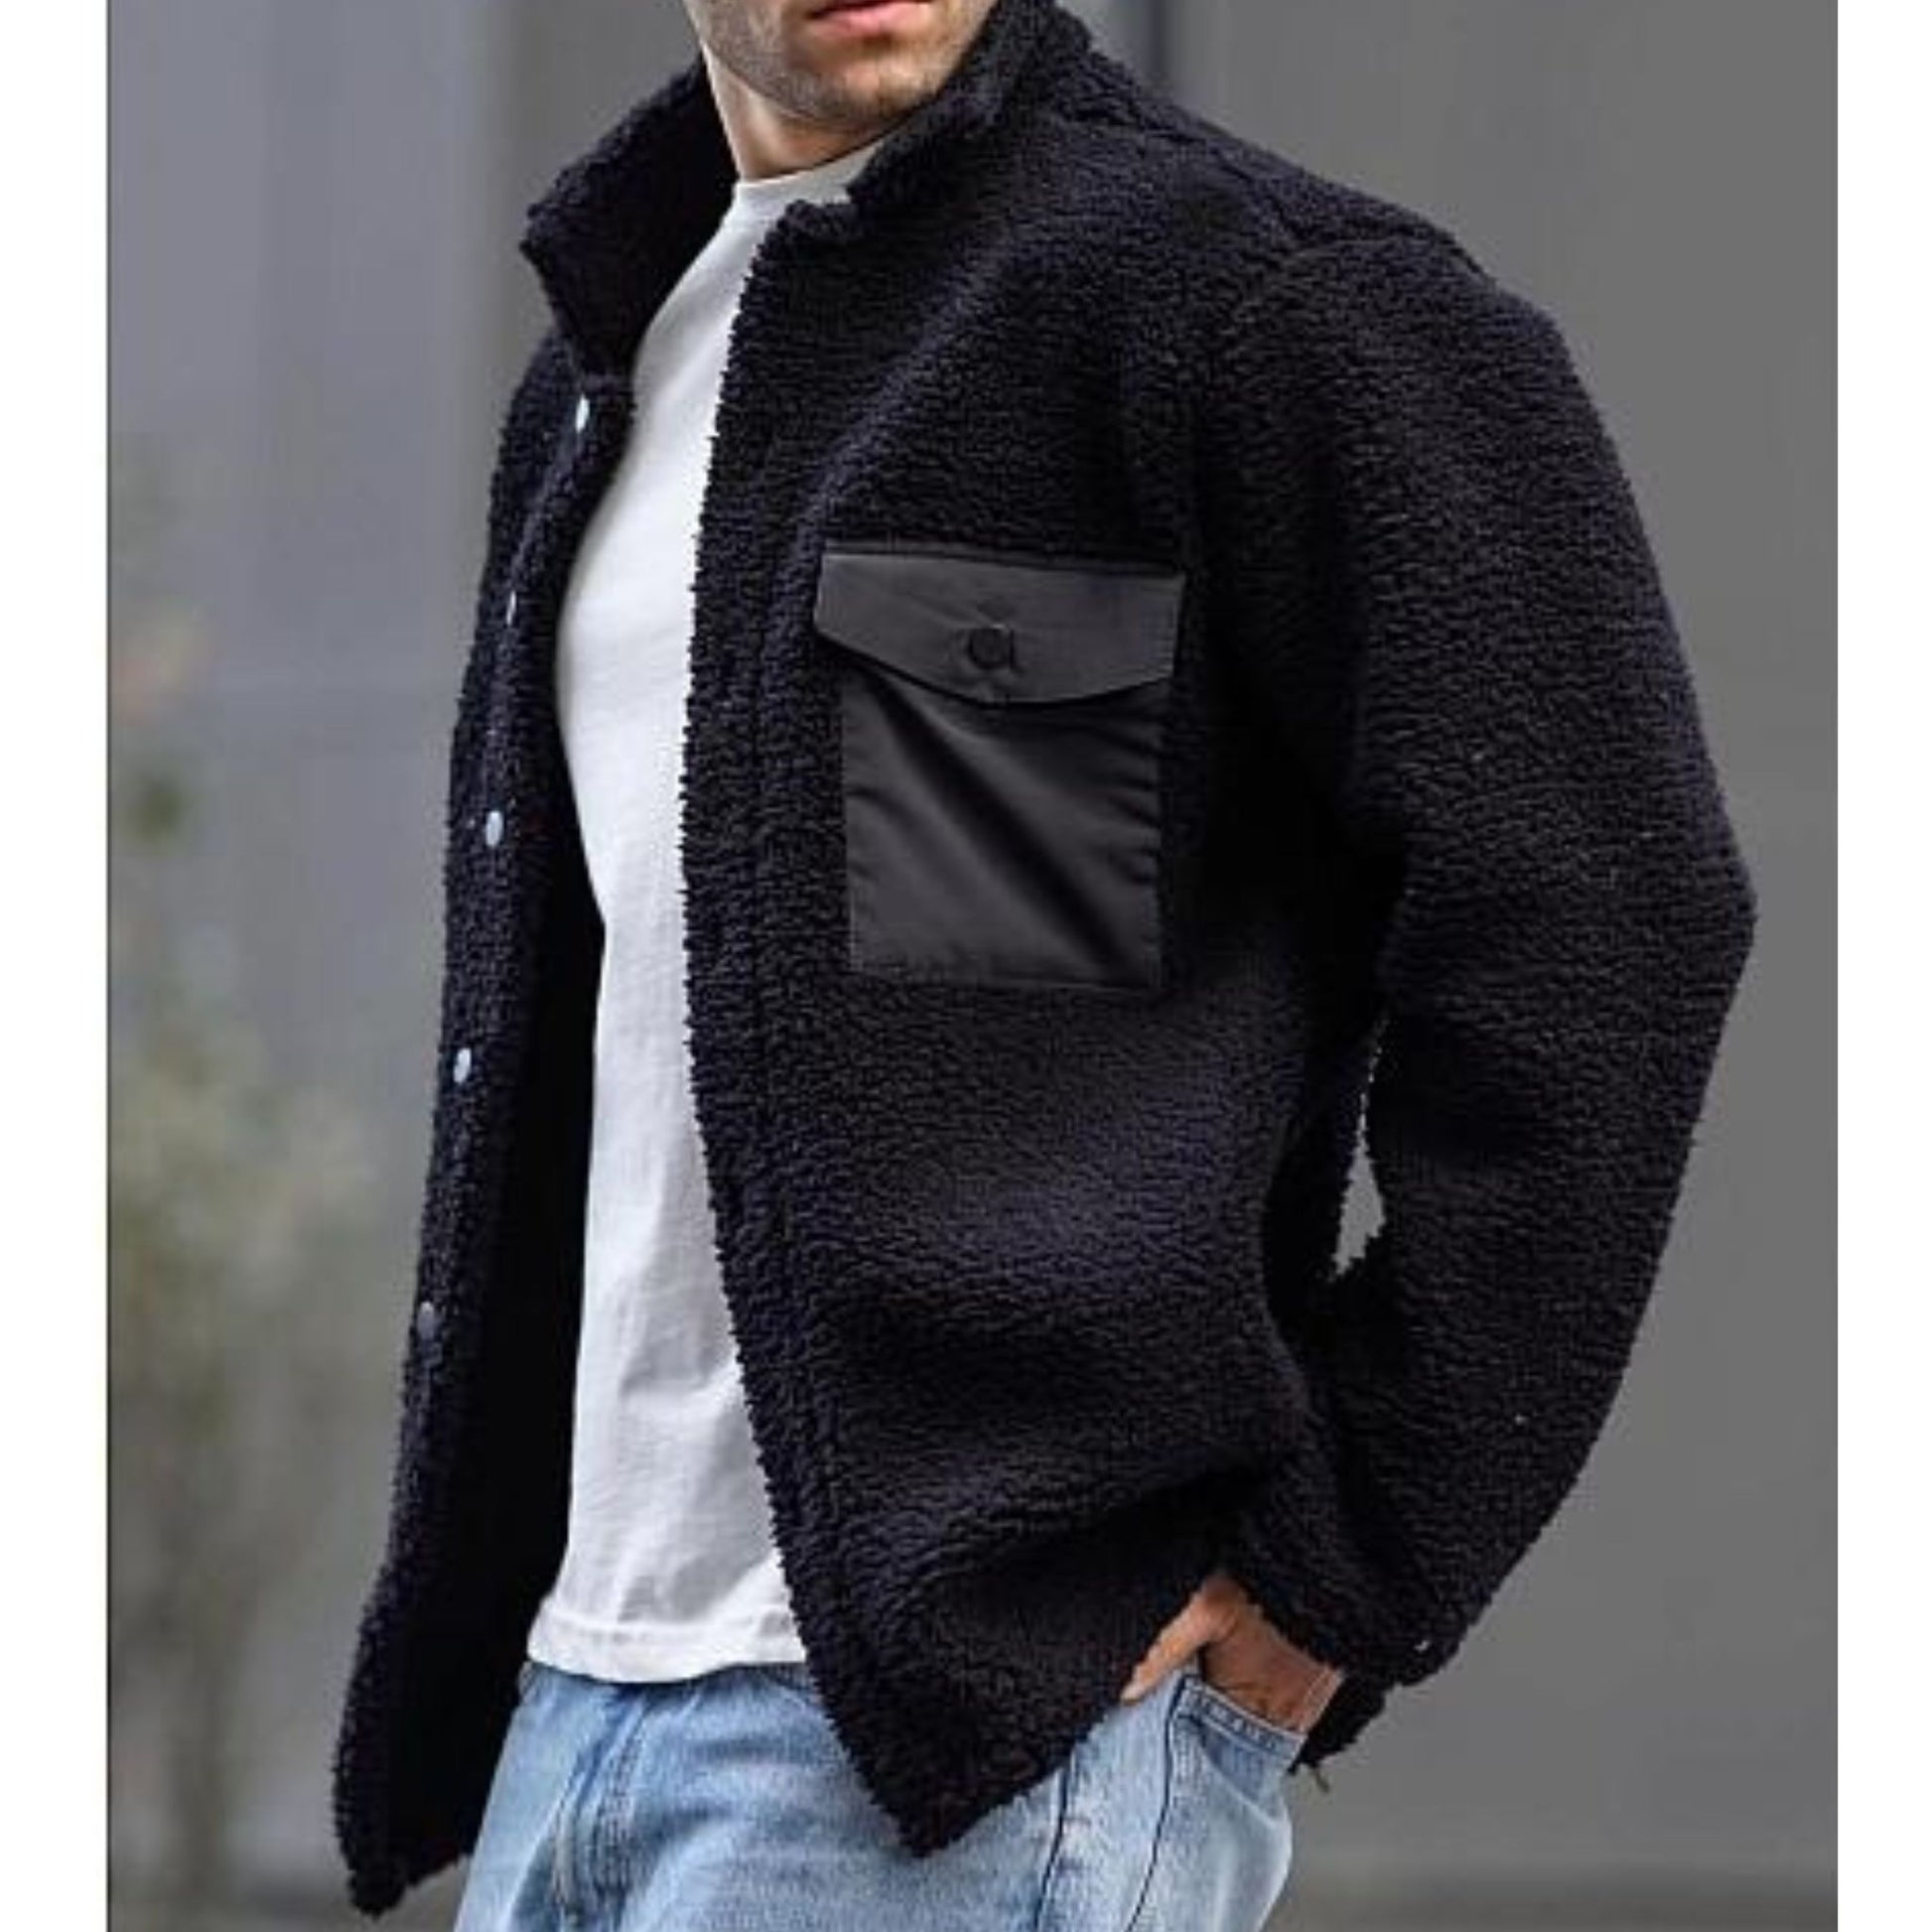 Stay Warm in Style: SHERPA MAX Jacket by KCT Menswear – KCTMenswear